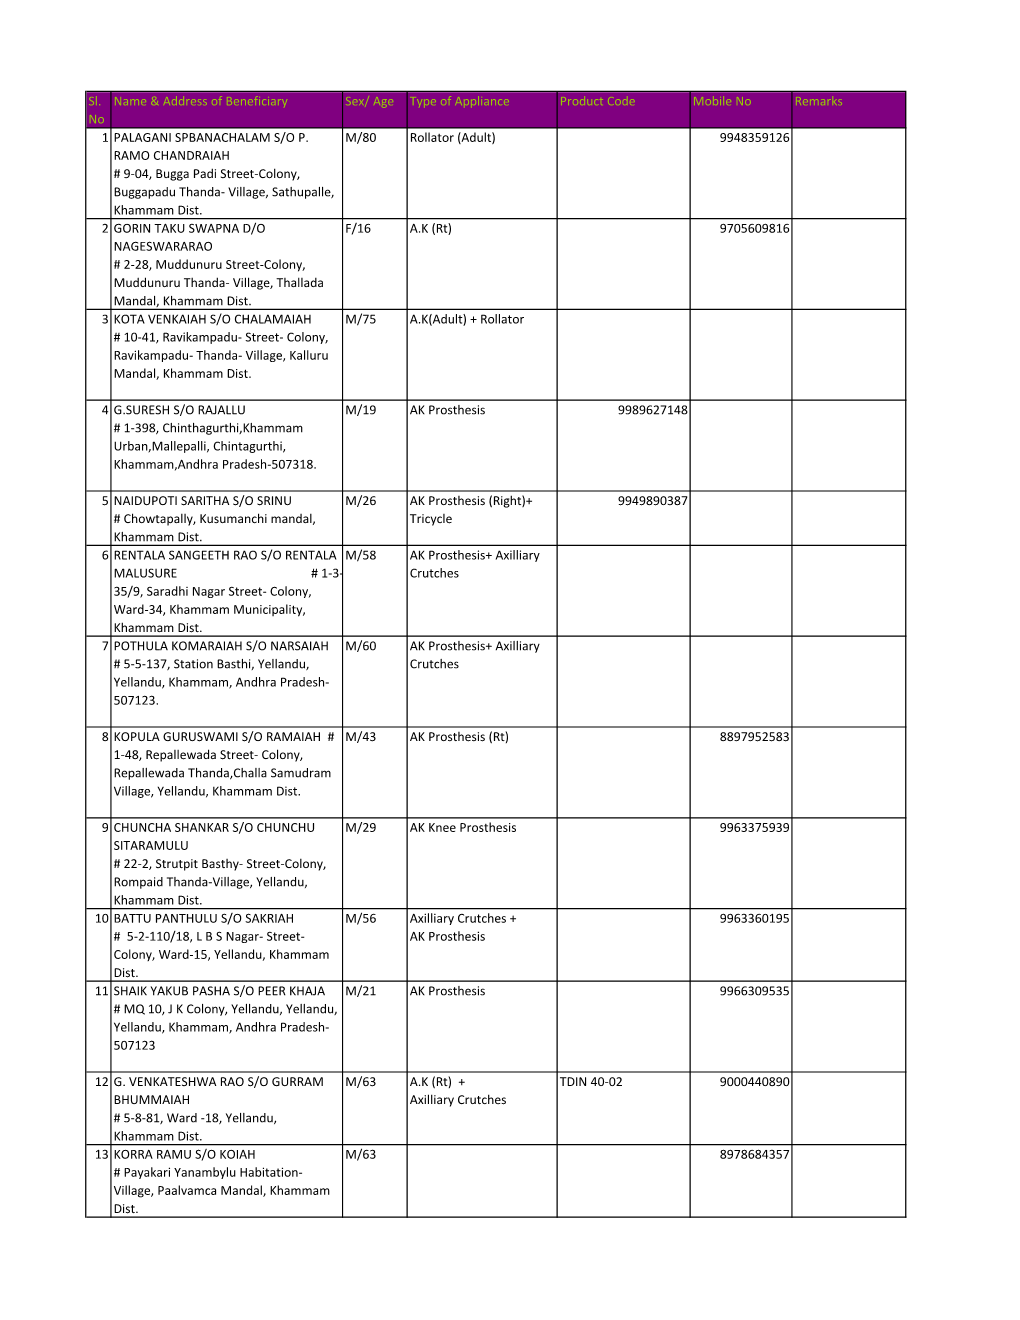 Khammam List of Beneficiaries